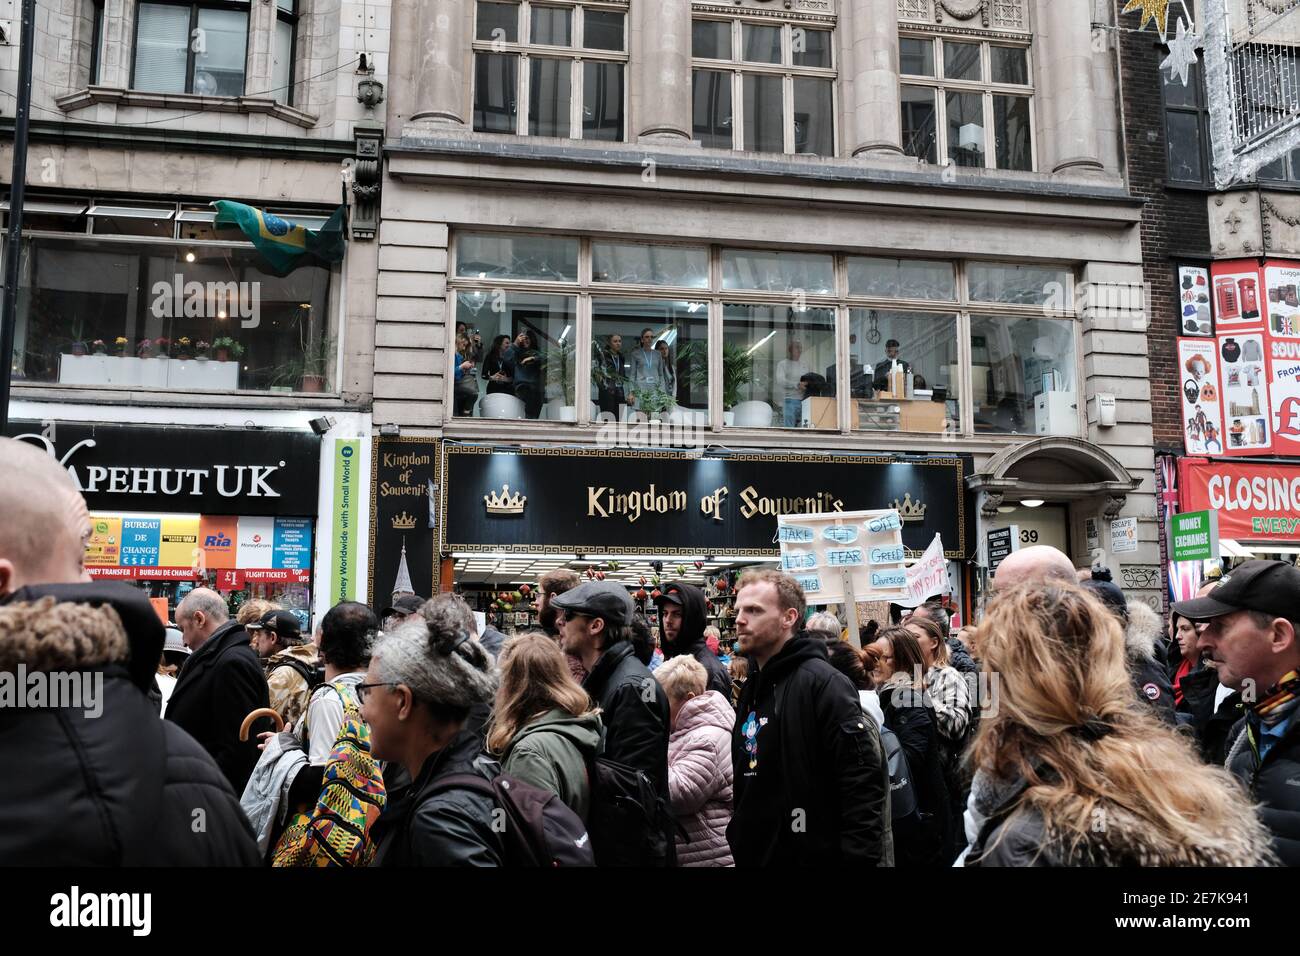 LONDRES, LE 24 OCTOBRE 2020 : manifestation anti-verrouillage dans le centre de Londres en réponse aux nouvelles restrictions de verrouillage des gouvernements concernant le virus. Banque D'Images